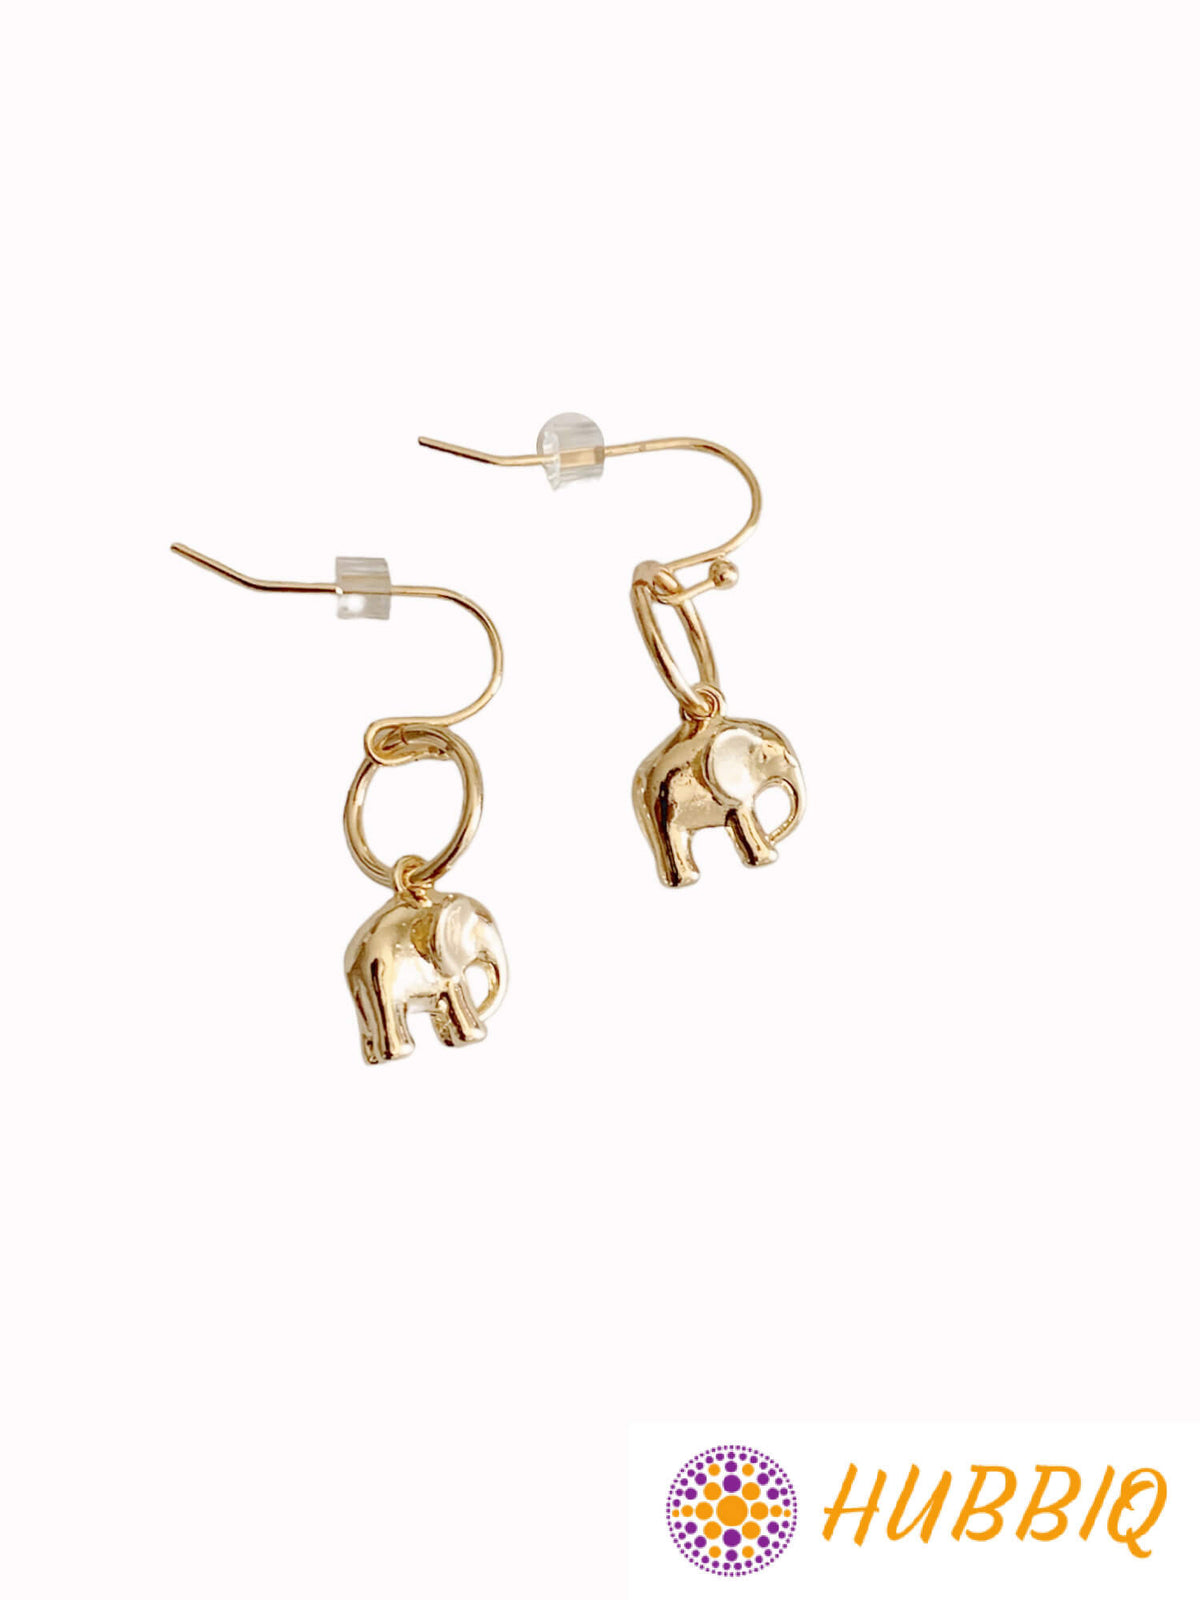 Elephant Earrings - HUBBIQ